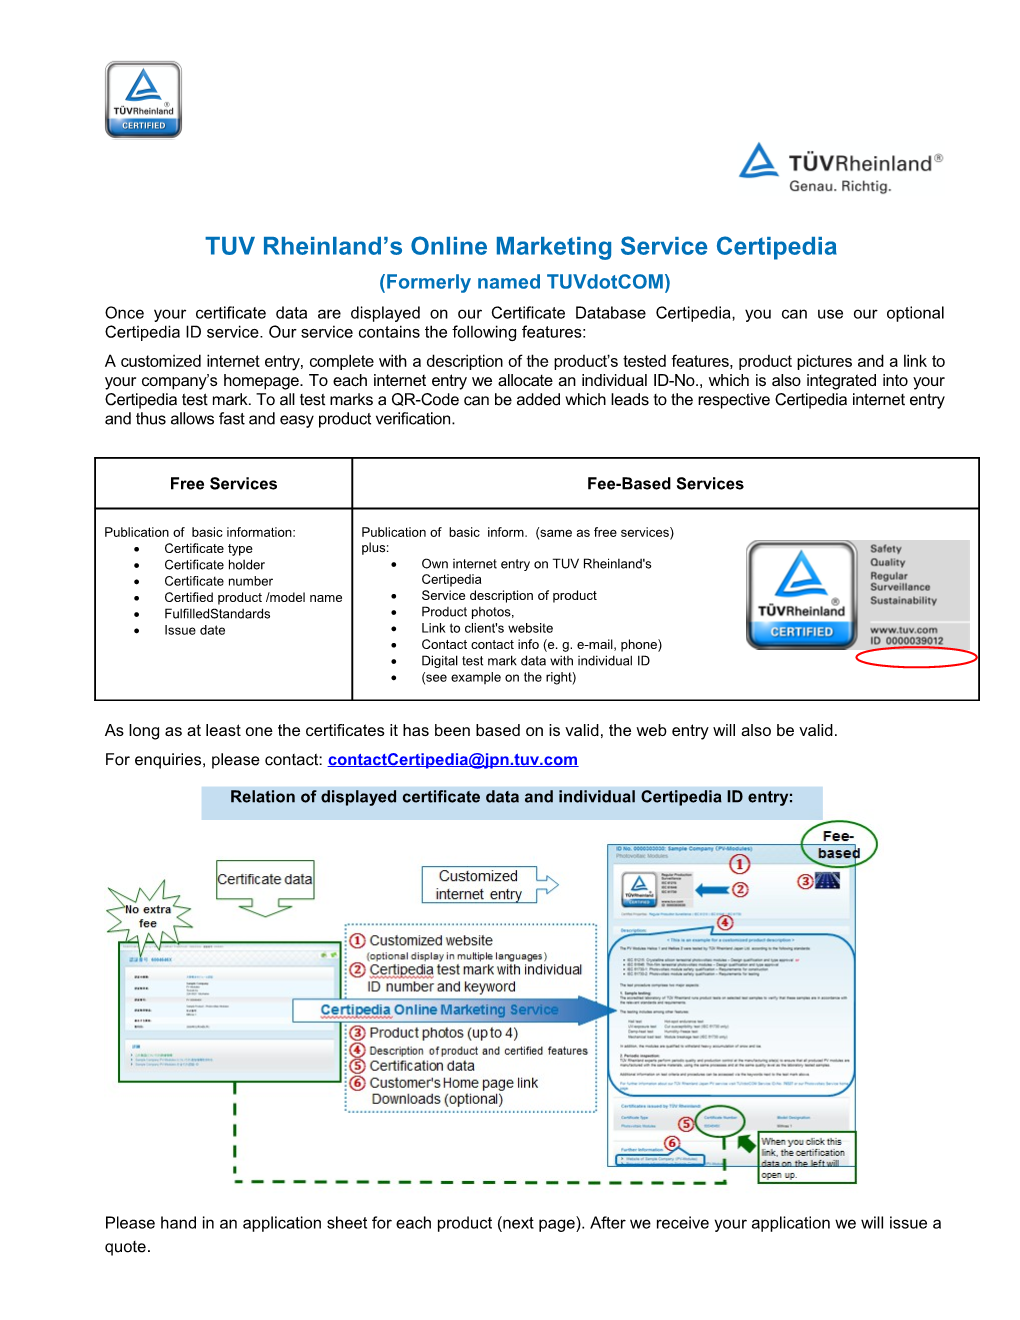 TUV Rheinland S Online Marketing Service Certipedia